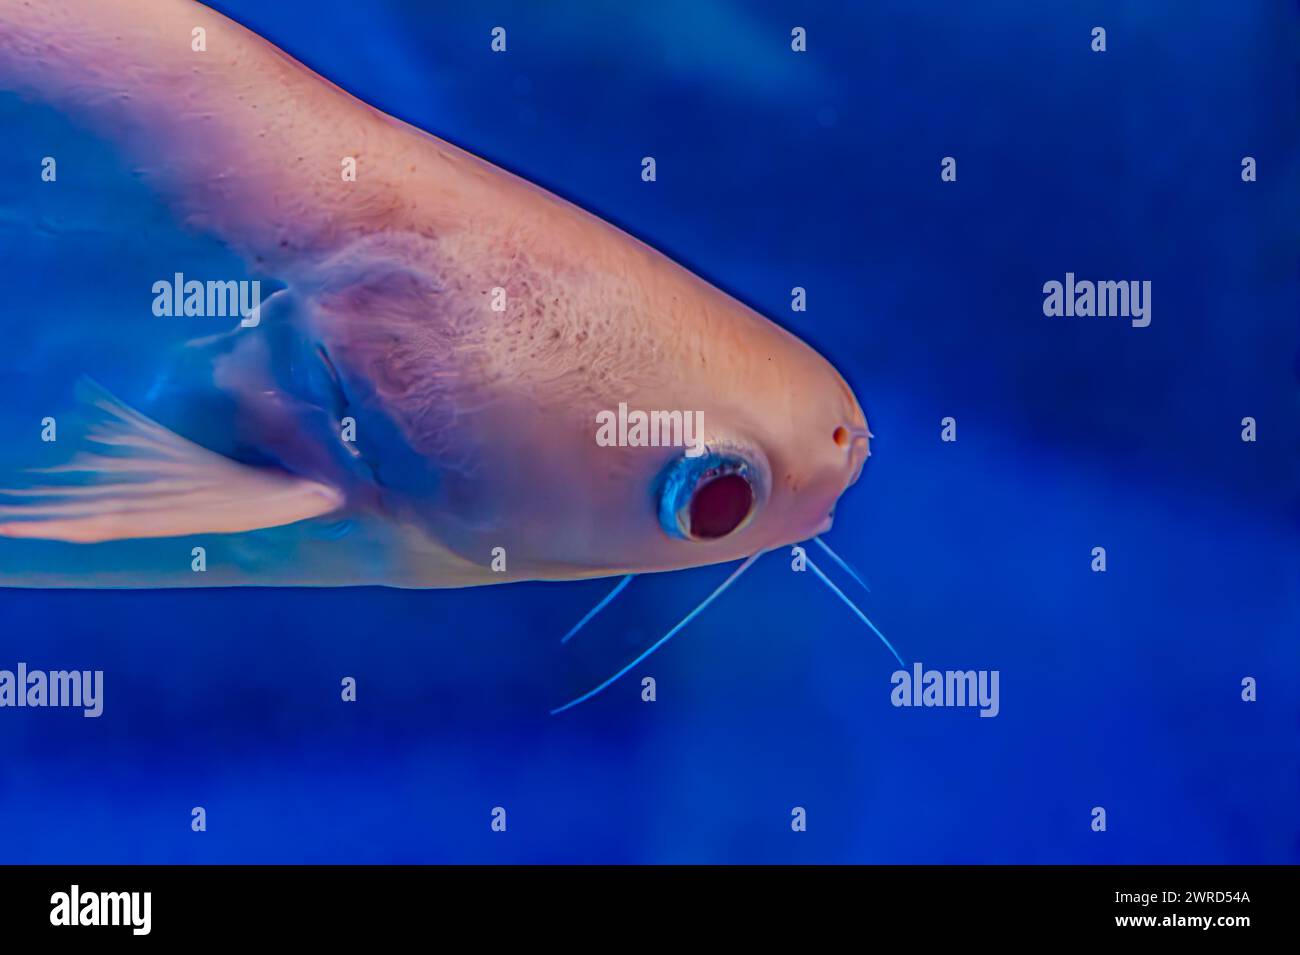 Nahaufnahme eines silbernen arowana-Fisches. Der Fisch hat einen langen, schlanken Körper mit großen Schuppen und einer glänzenden silbernen Farbe. Asiatische Gold-arowana-Fische sehen sich nahe Stockfoto